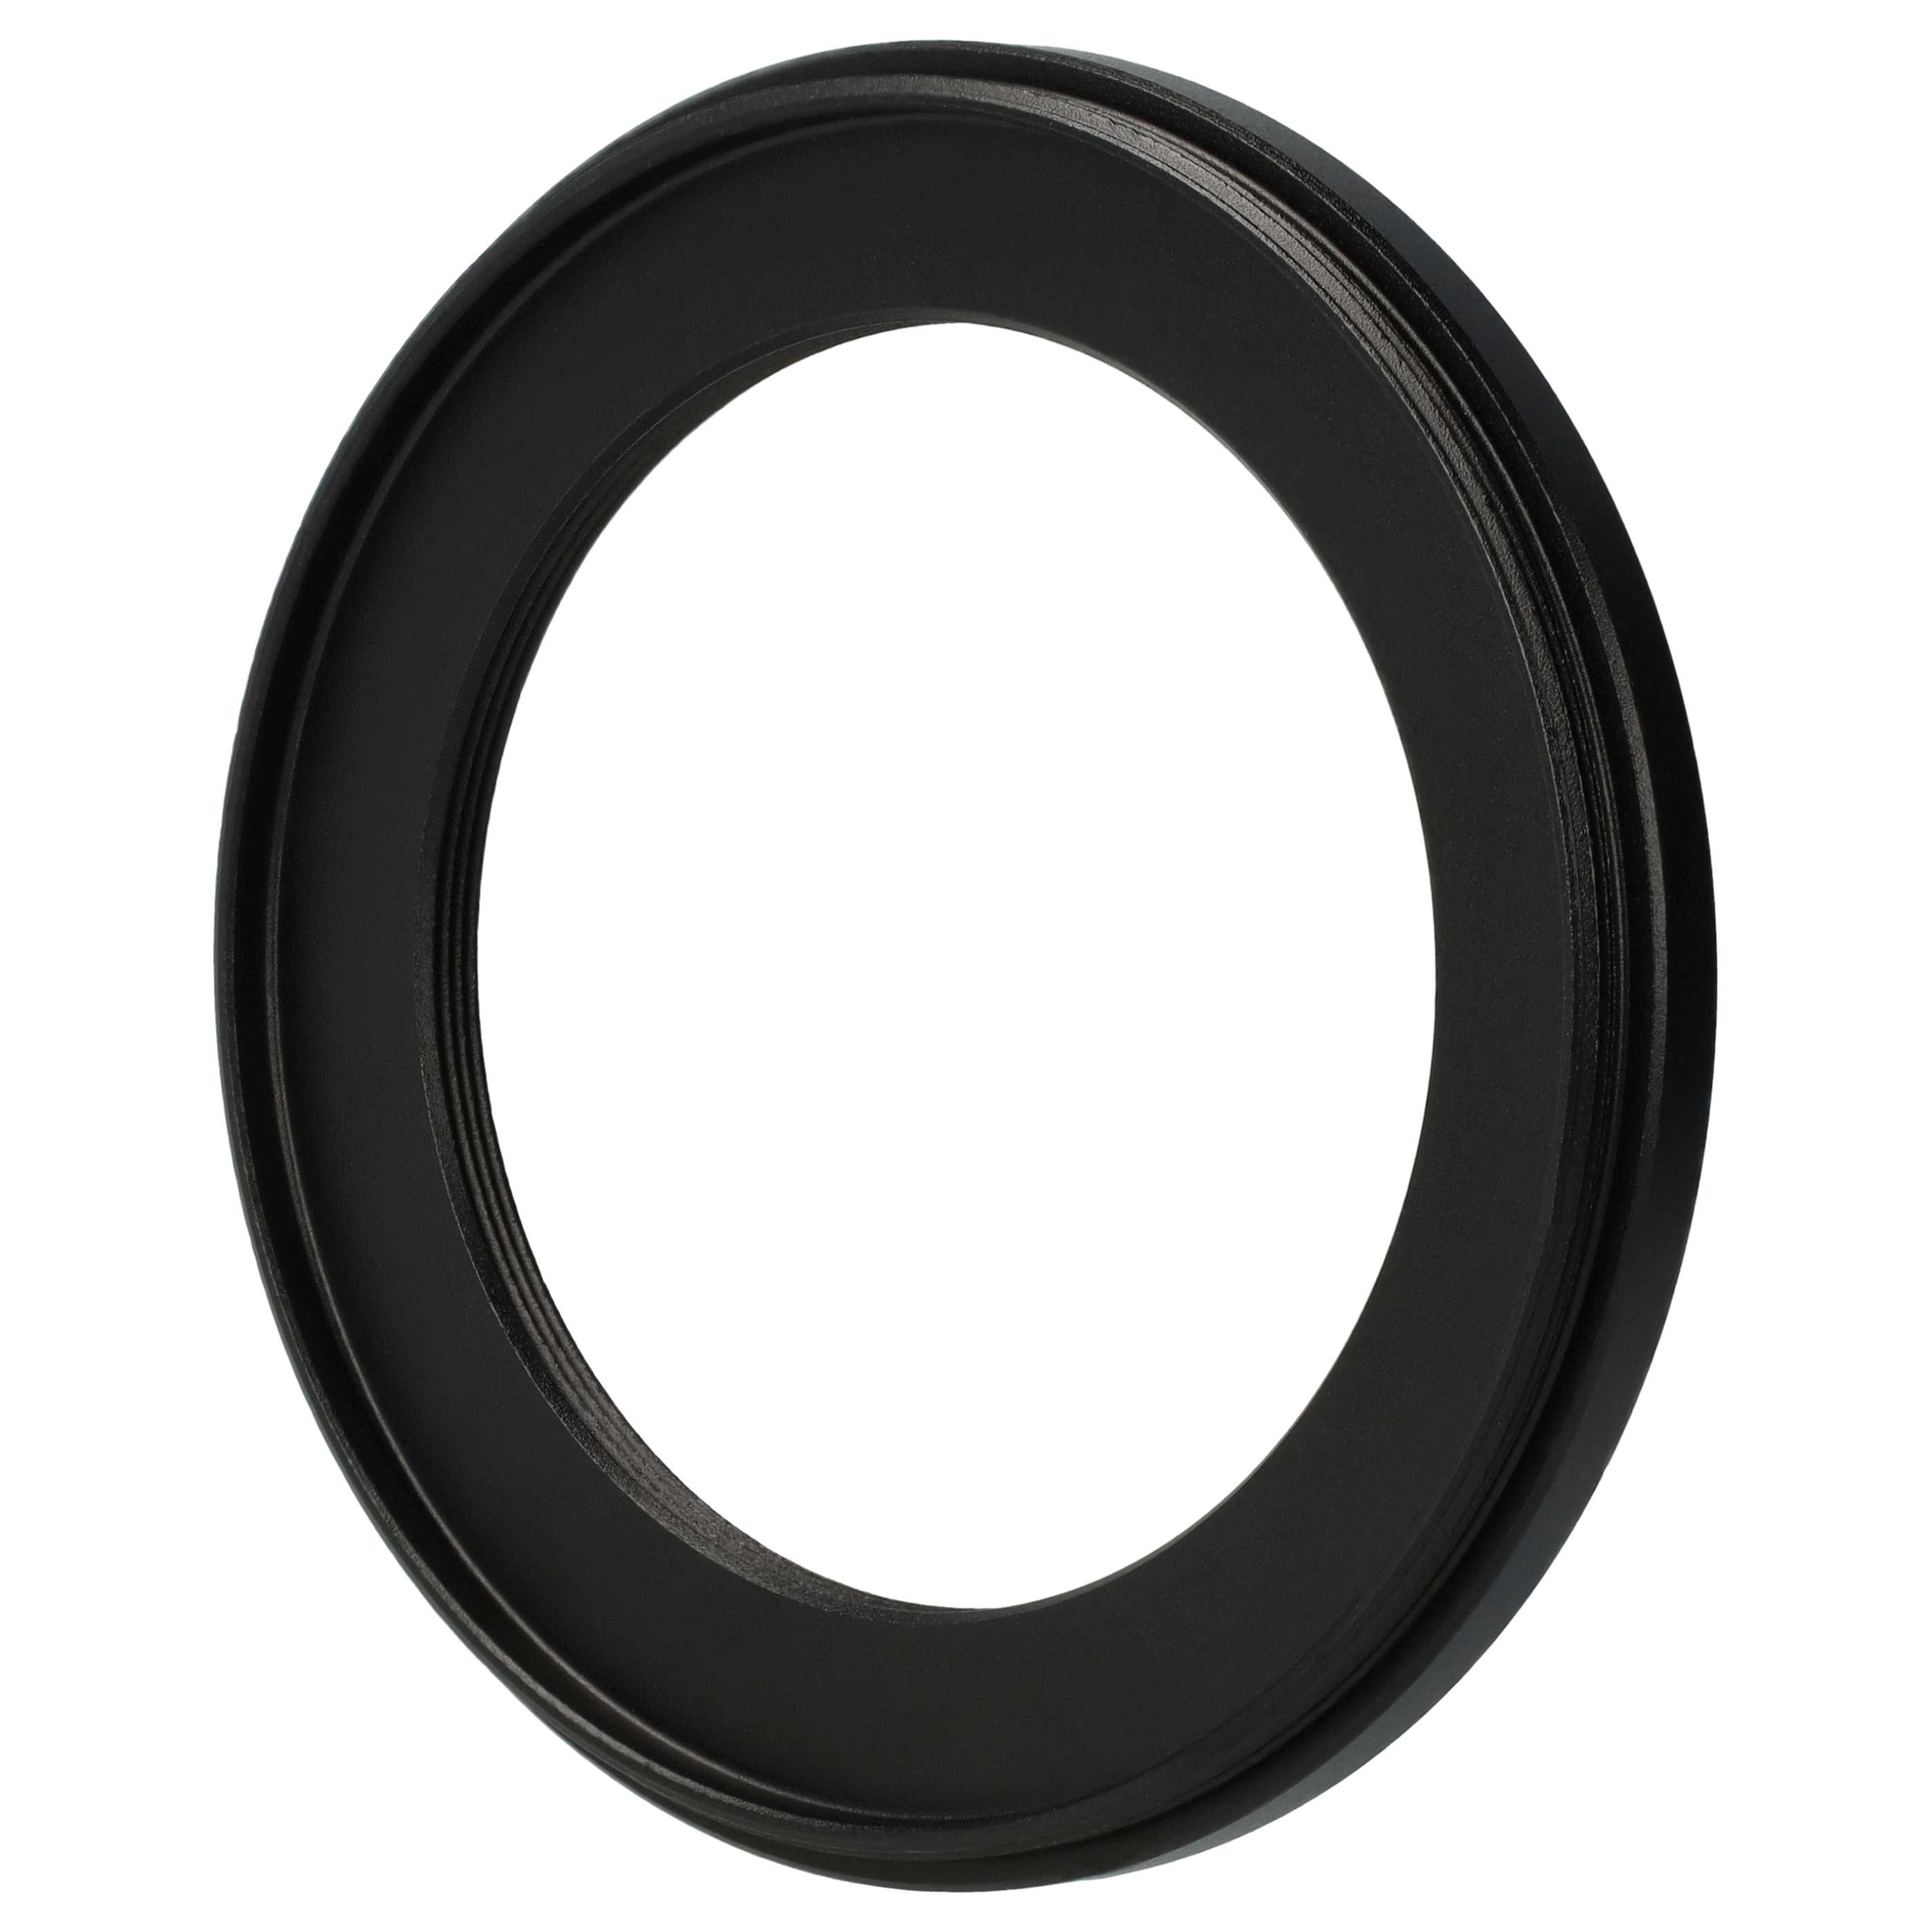 Anillo adaptador Step Down de 67 mm a 49 mm para objetivo de la cámara - Adaptador de filtro, metal, negro